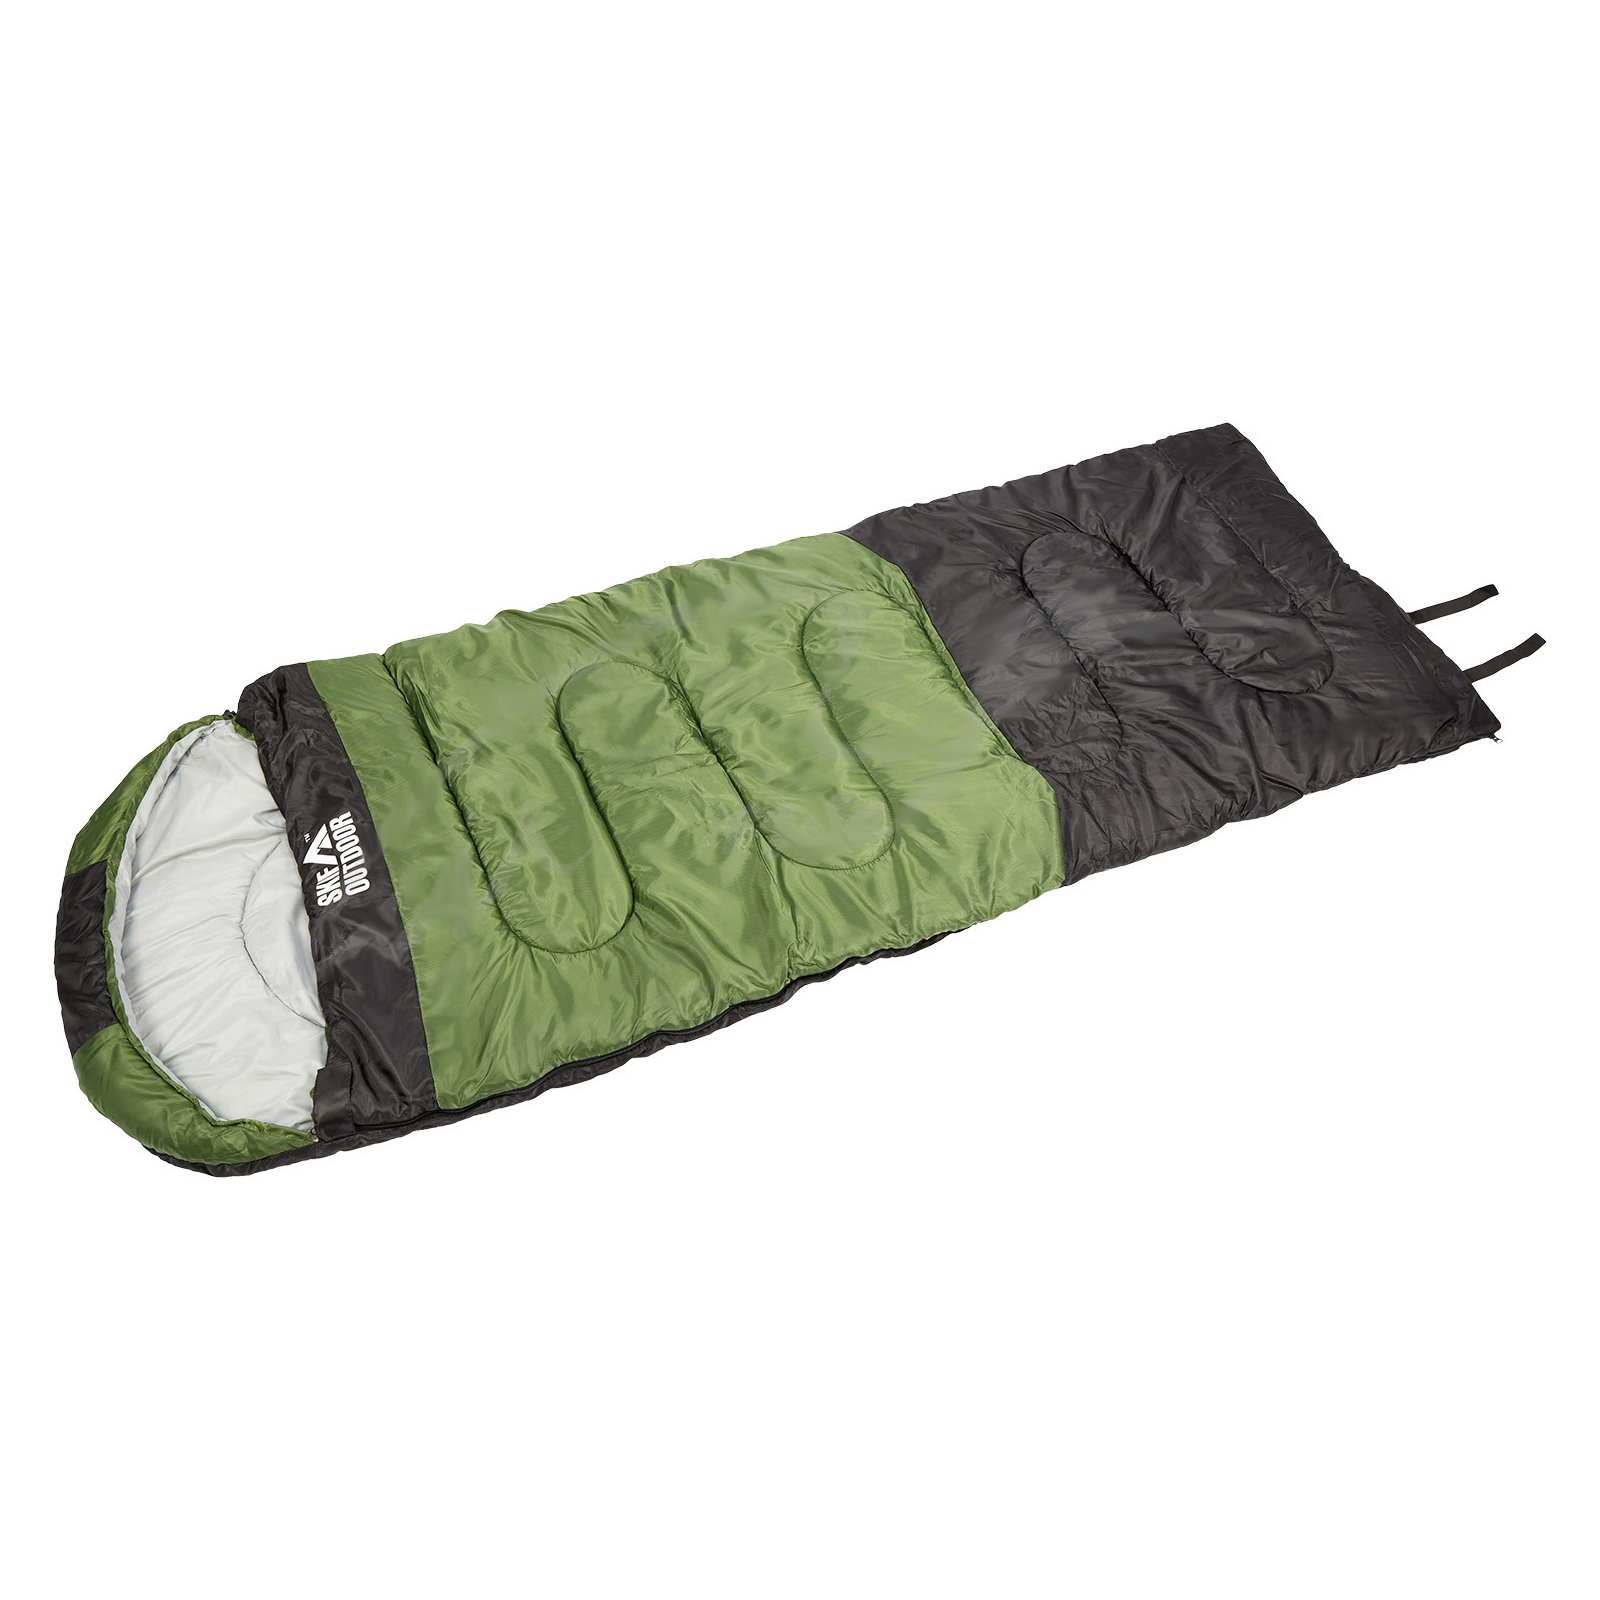 Спальный мешок Skif Outdoor Morpheus 1400 (SOSBM1400)